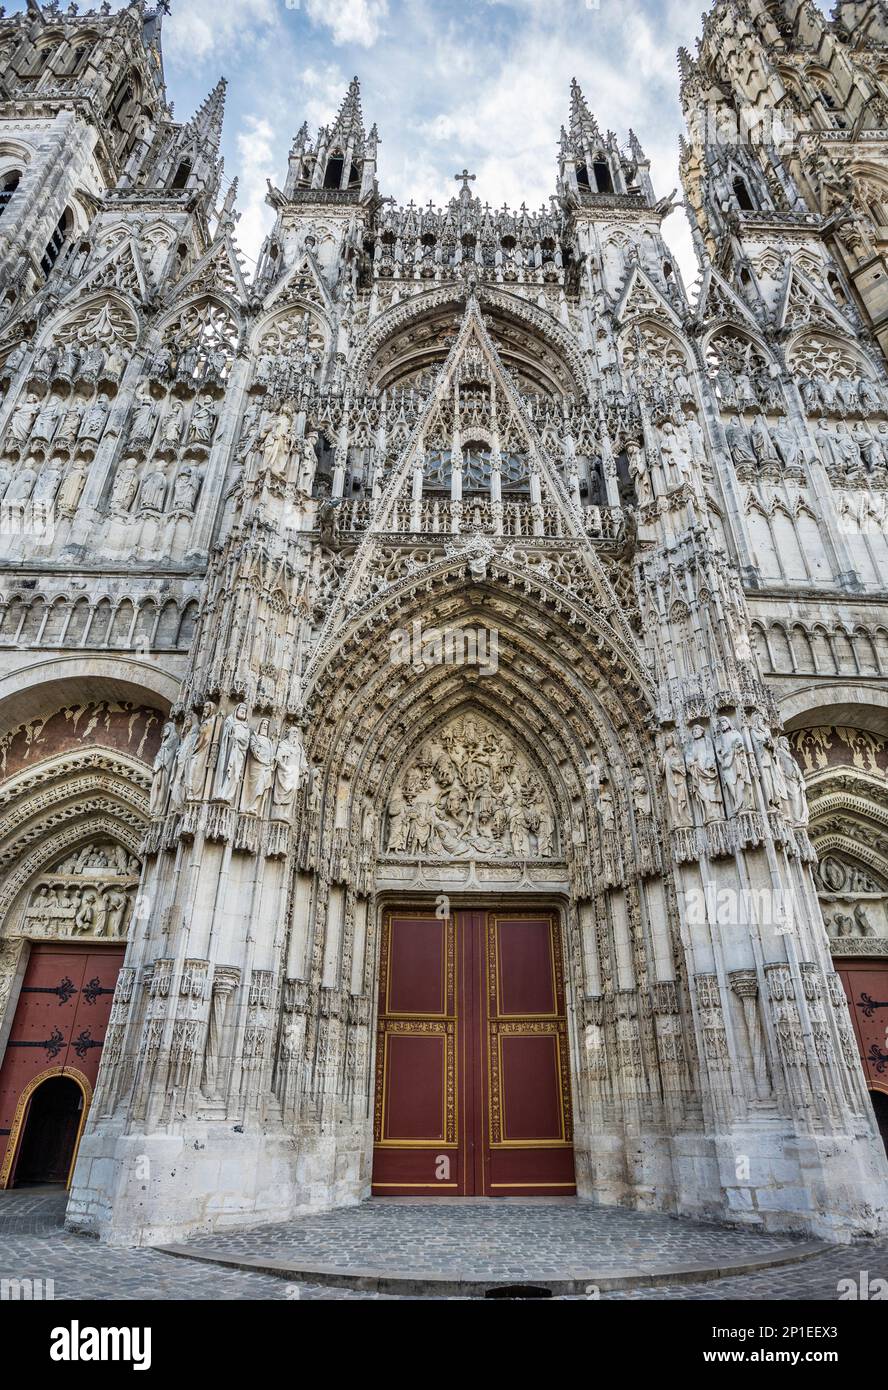 Portails et galeries de sculptures sur la façade ouest de la Cathédrale de Rouen, Rouen, Normandie, France Banque D'Images